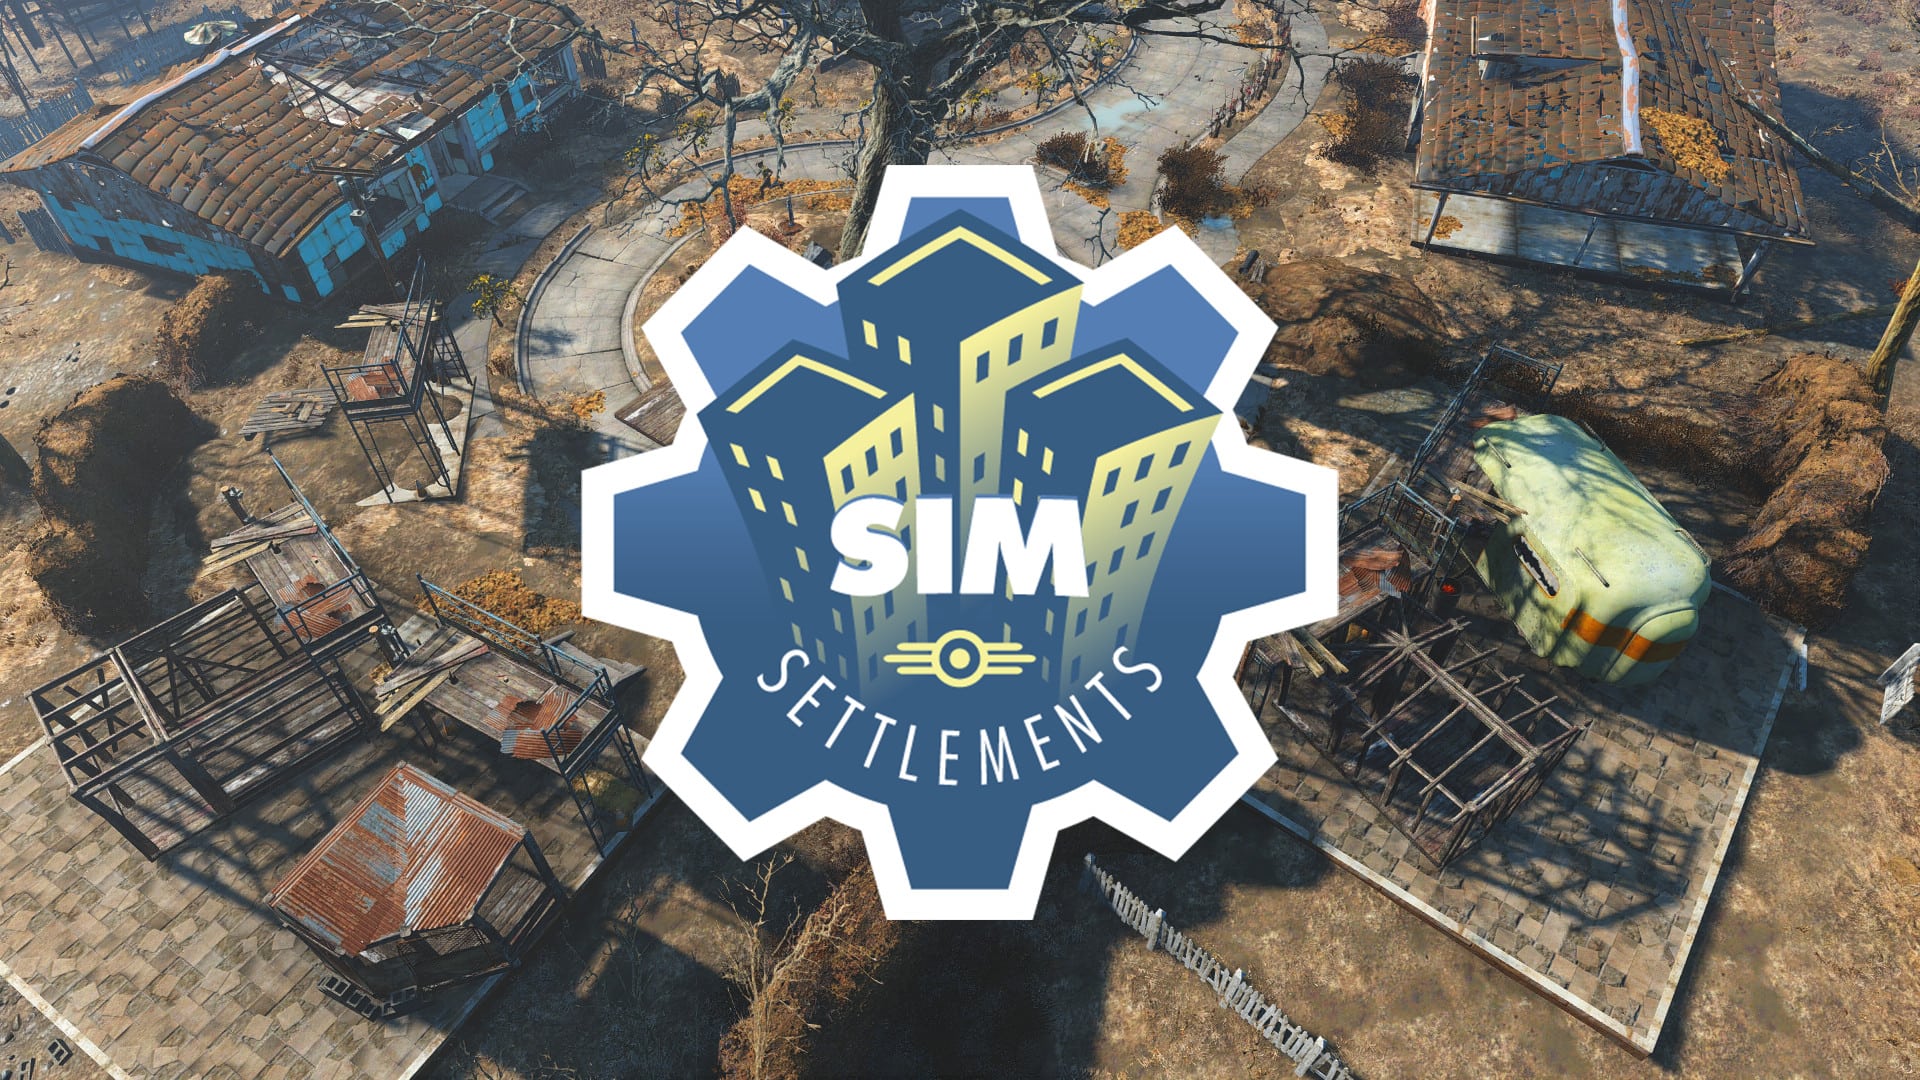 сборка fallout 4 на основе sim settlements 2 фото 18